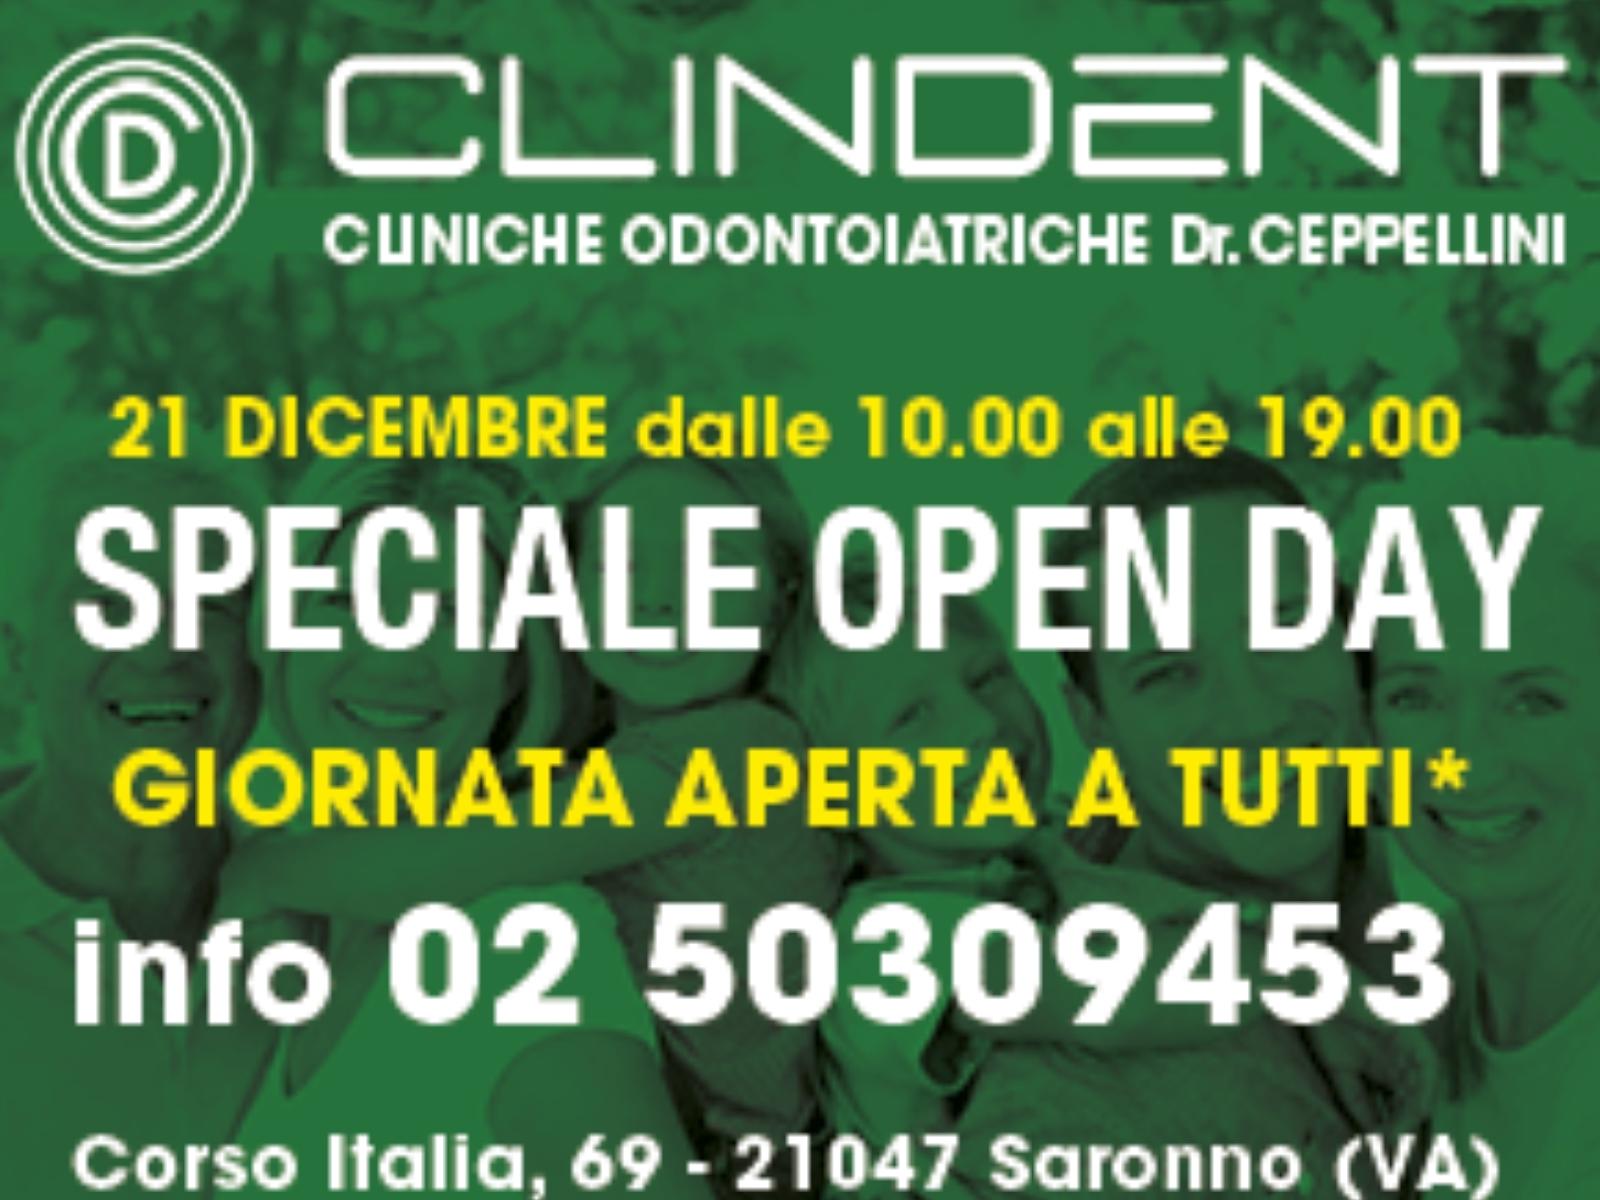 Open day per la clinica dentistica Clindent di corso Italia. Info e tanti gadget